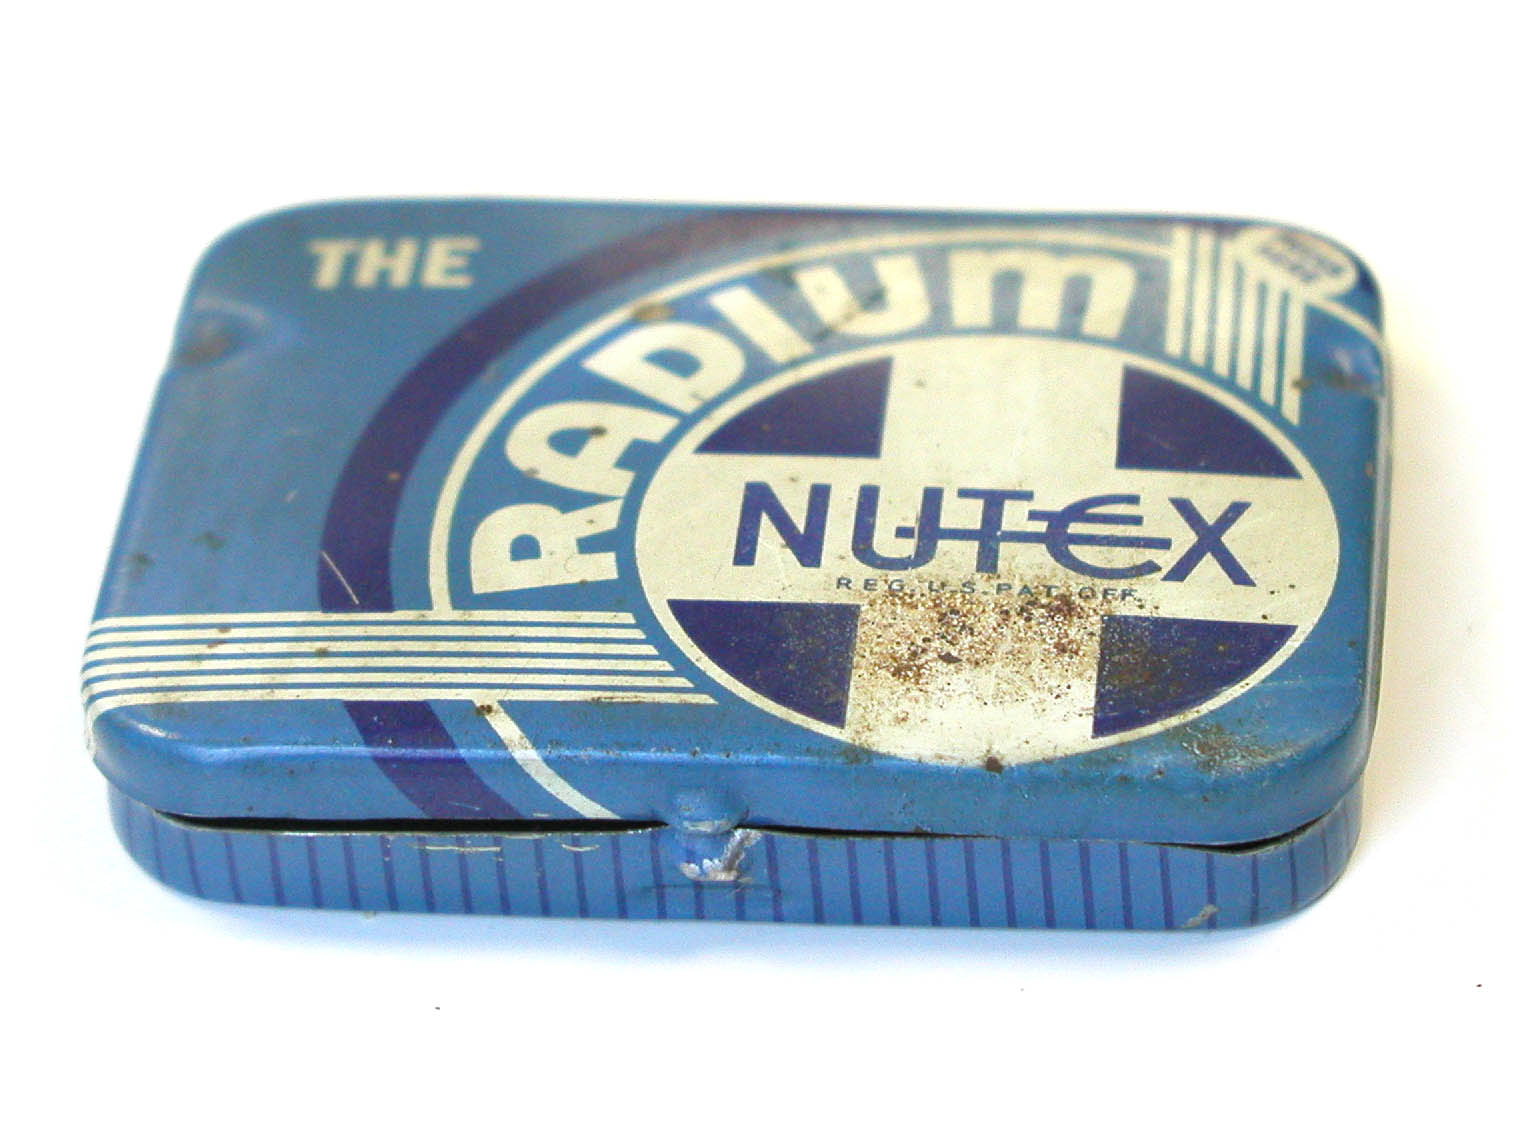 NUTEX Radium Condoms (ca. 1940s)